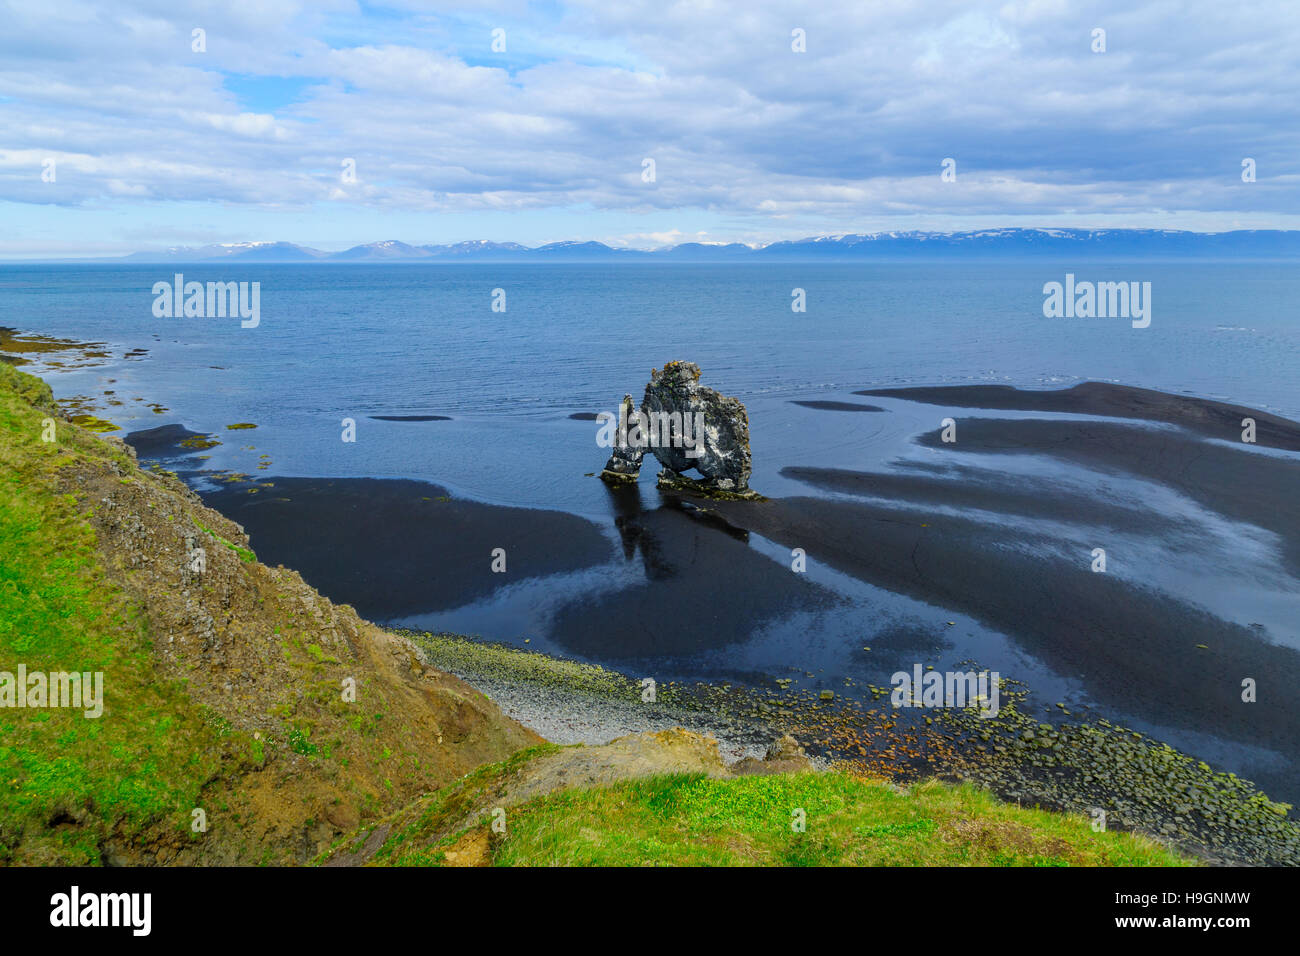 Vue de la pile de basalte Hvitserkur, sur la rive orientale de la péninsule de Vatnsnes, nord-ouest de l'Islande Banque D'Images